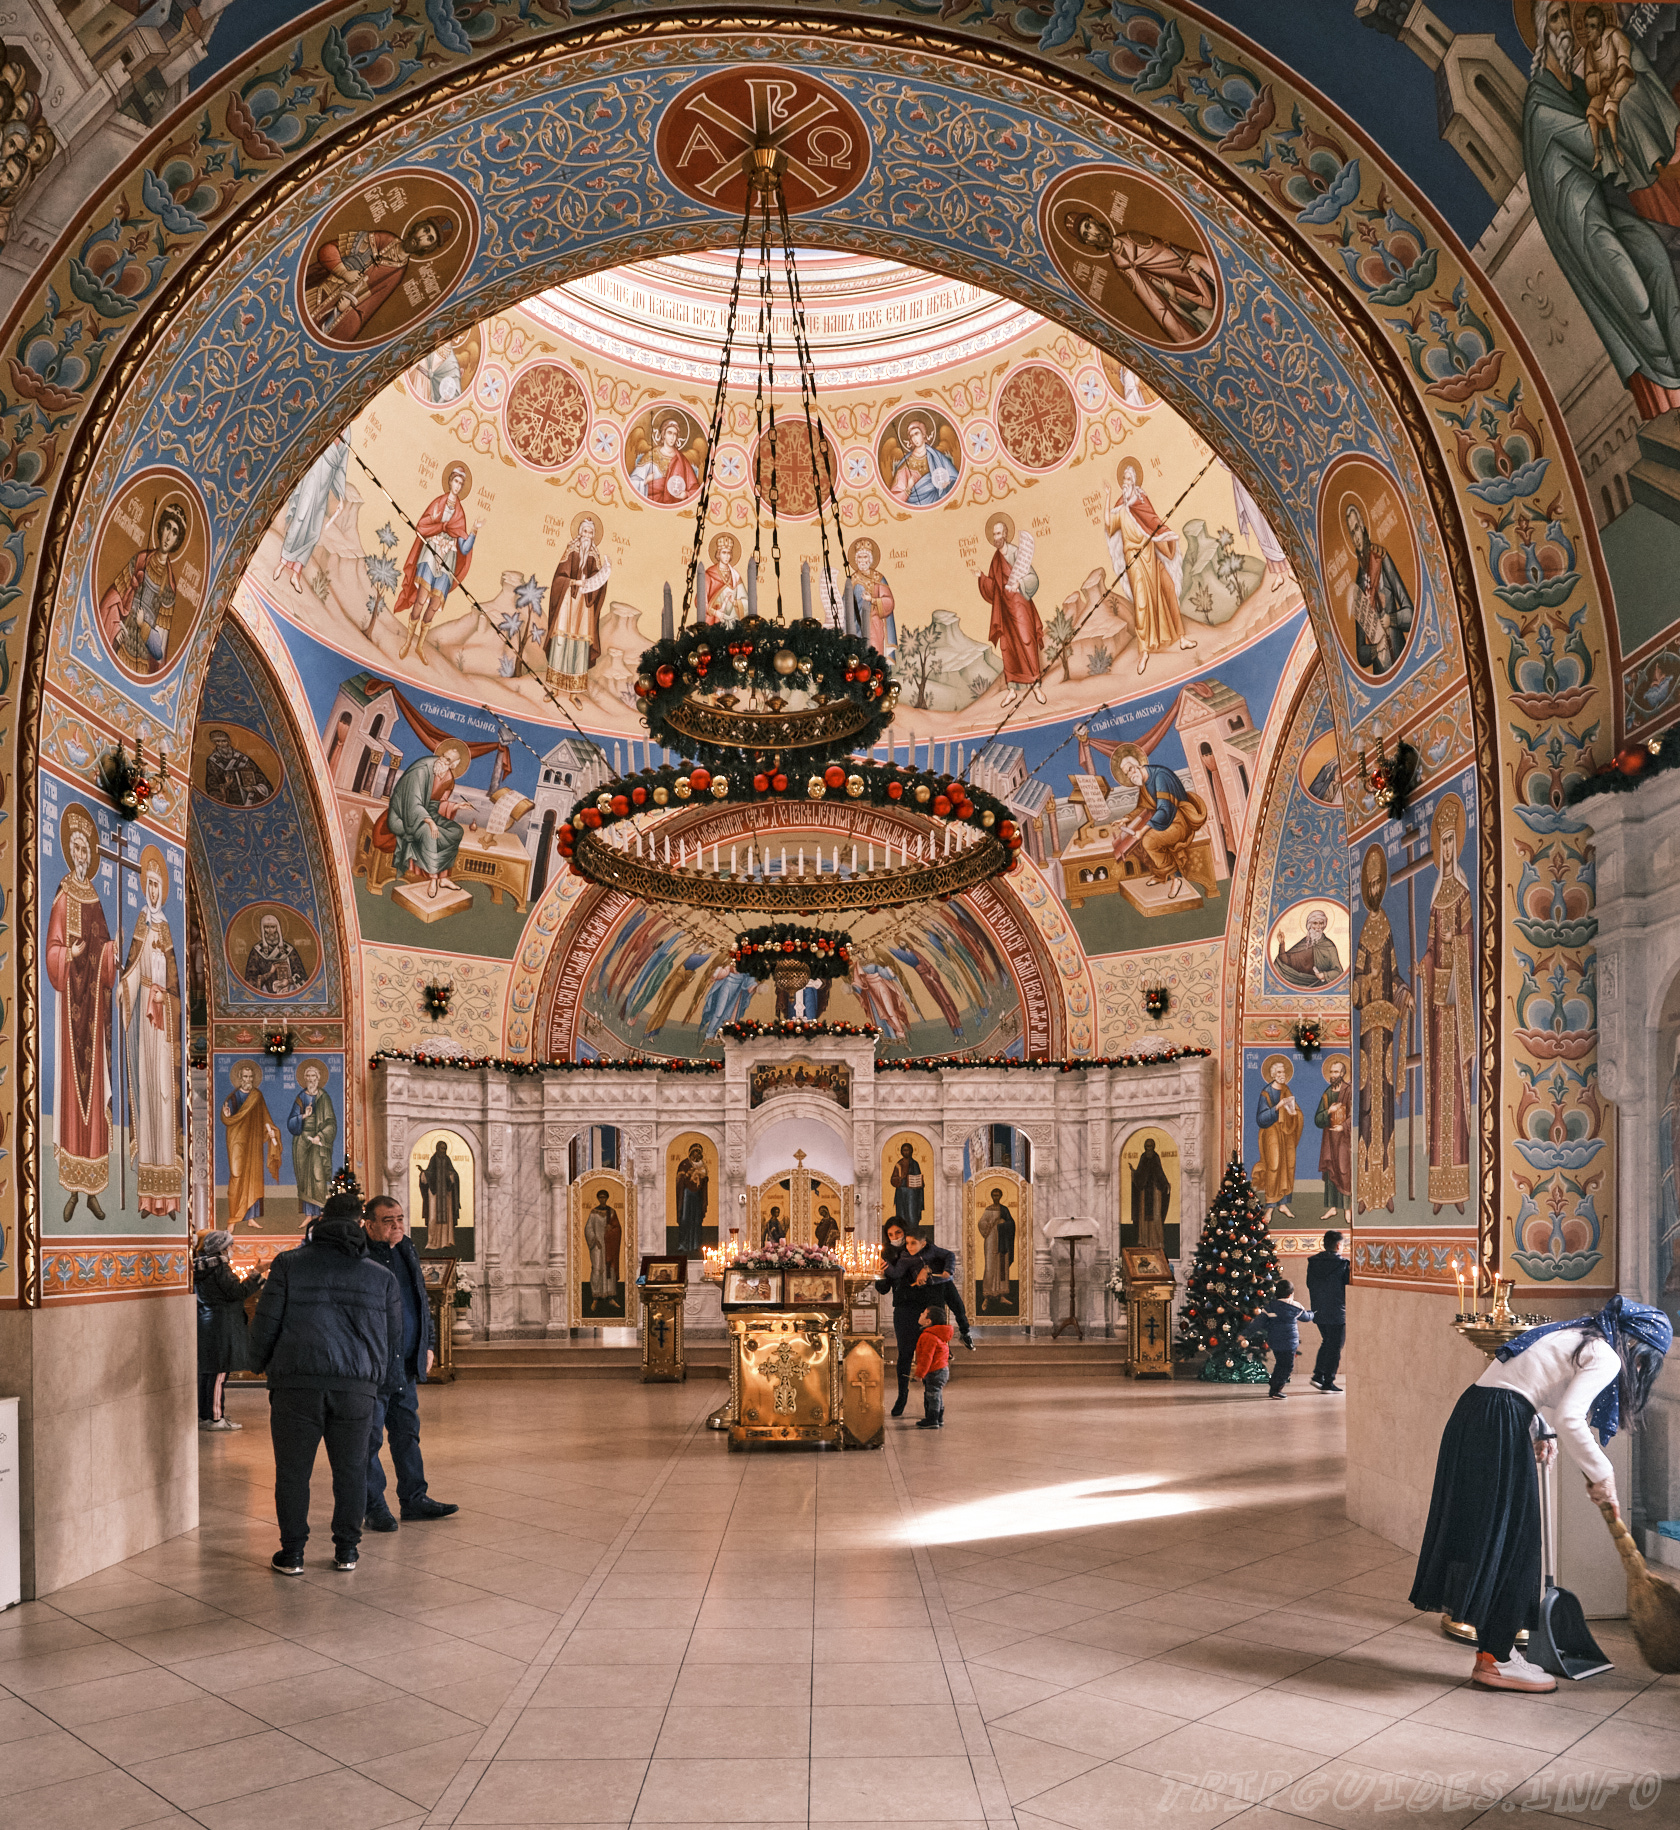 Фото №2 - Свято-Вознесенский кафедральный собор в Геленджике